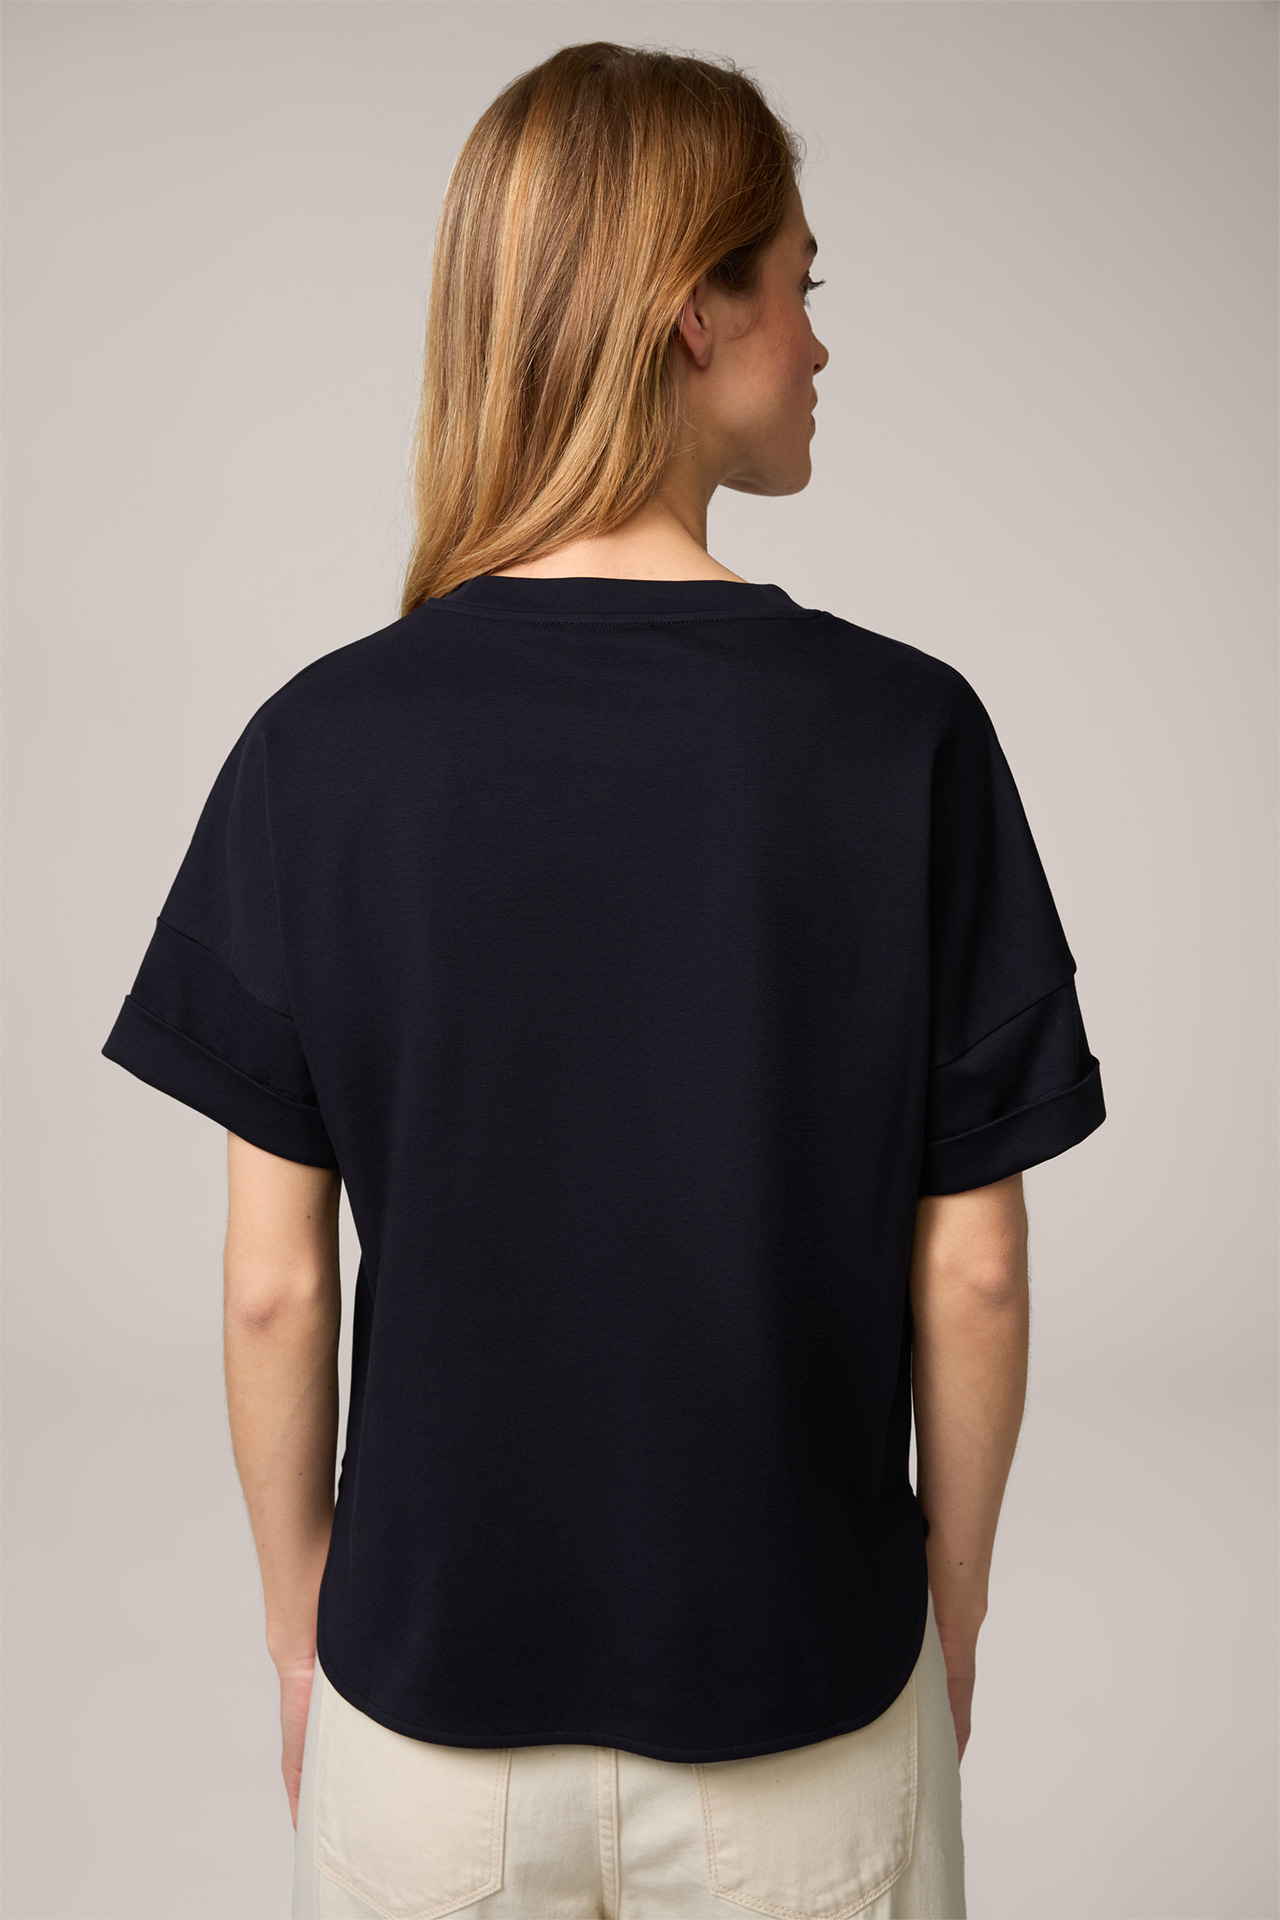 T-shirt en coton interlock à manches courtes, en bleu marine